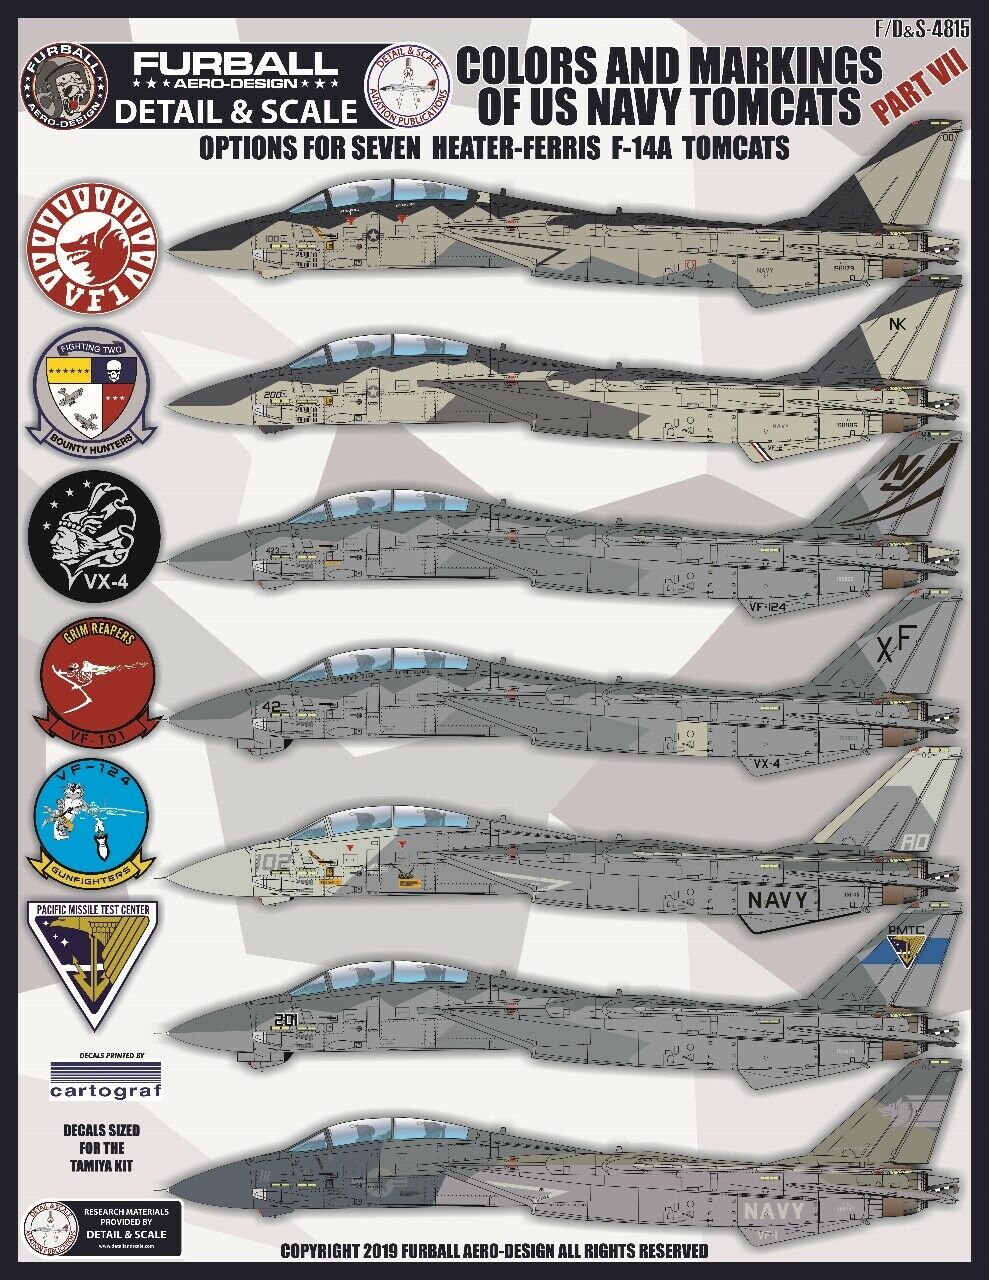 1/48 F-14A 雄猫战斗机"色彩与标记"(7)